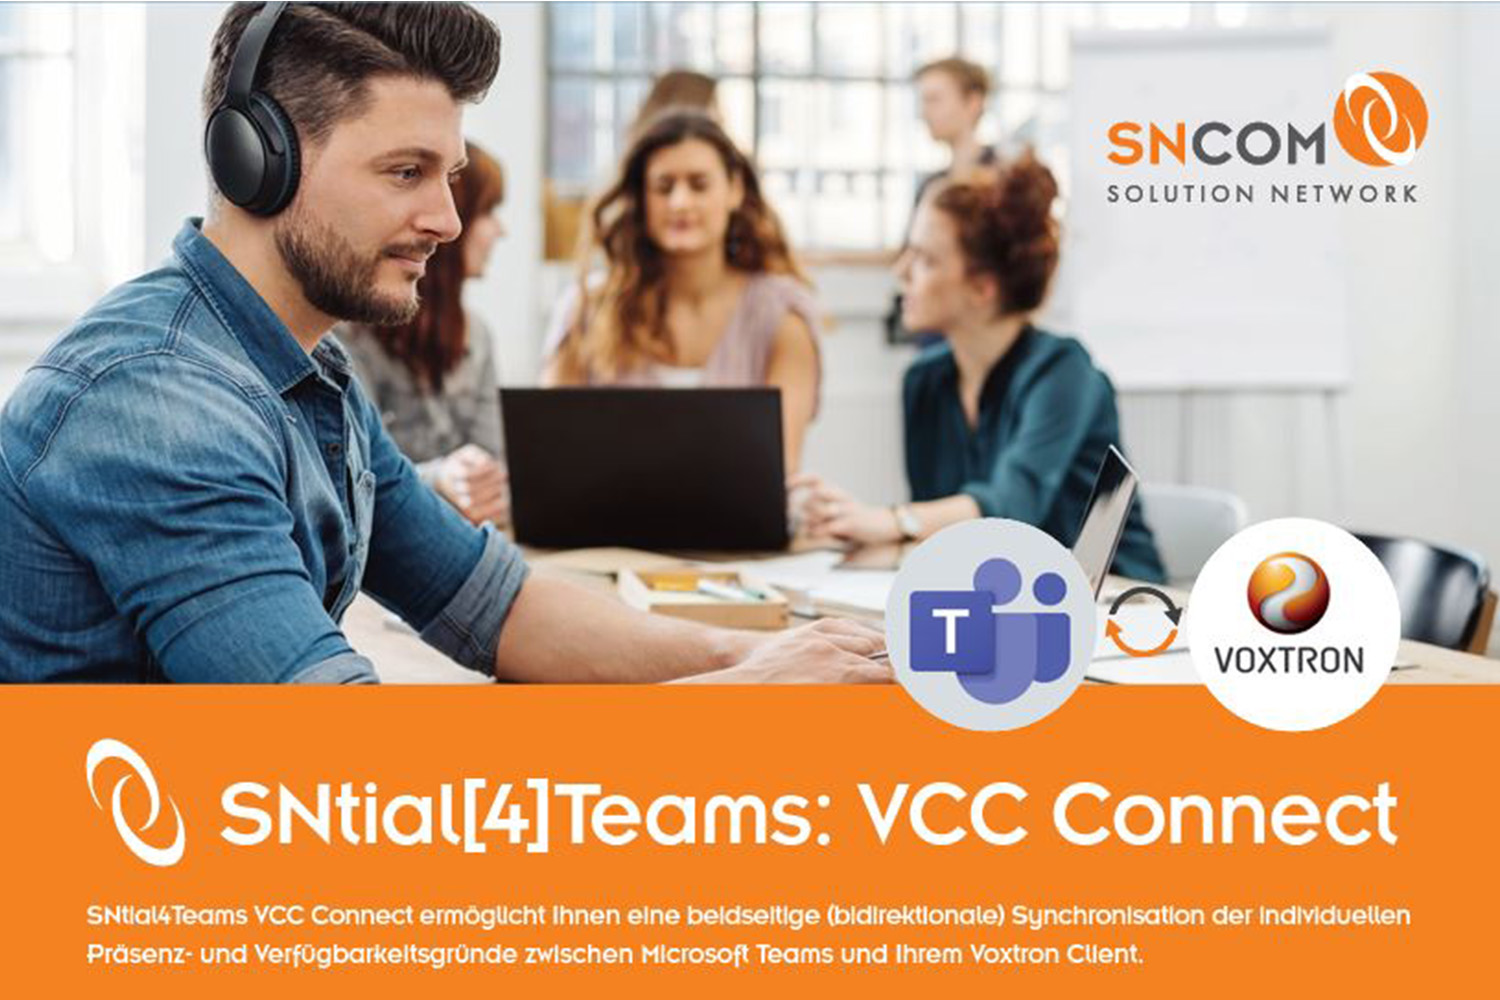 SNtial4Teams VCC Connect. SNtial4Teams VCC Connect ermöglicht ihnen eine beidseitige (bidirektionale) Synchronisation der individuellen Präsenz- und Verfügbarkeitsgründe zwischen Microsoft Teams und ihrem Voxtron Client.